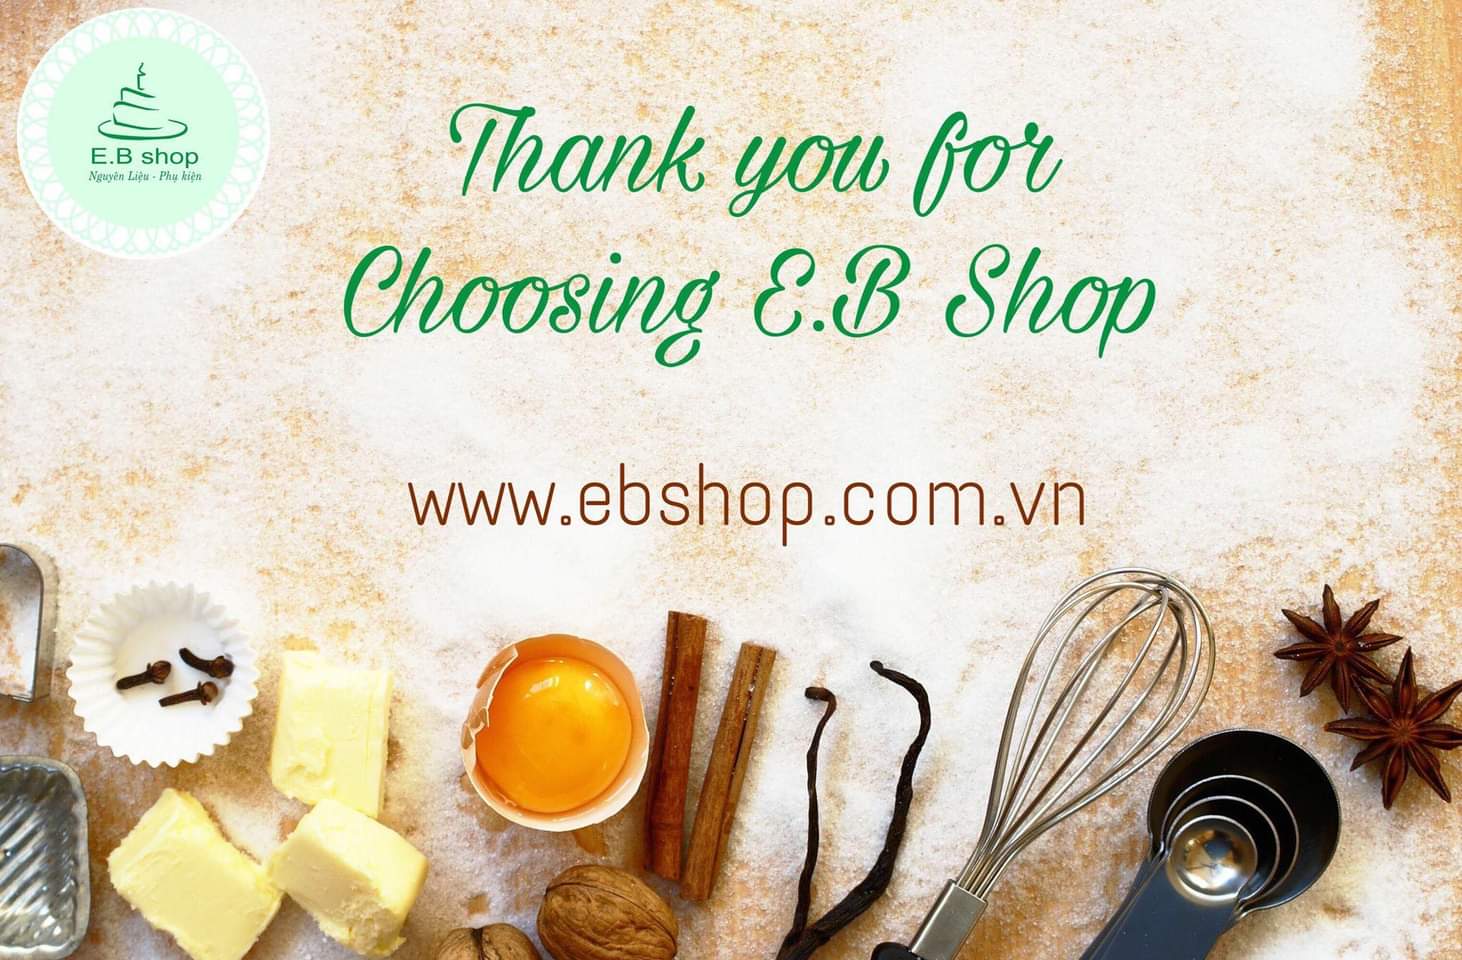 E.B Shop - Địa chỉ mua đồ làm bánh chất lượng tốt tại Hà Nội